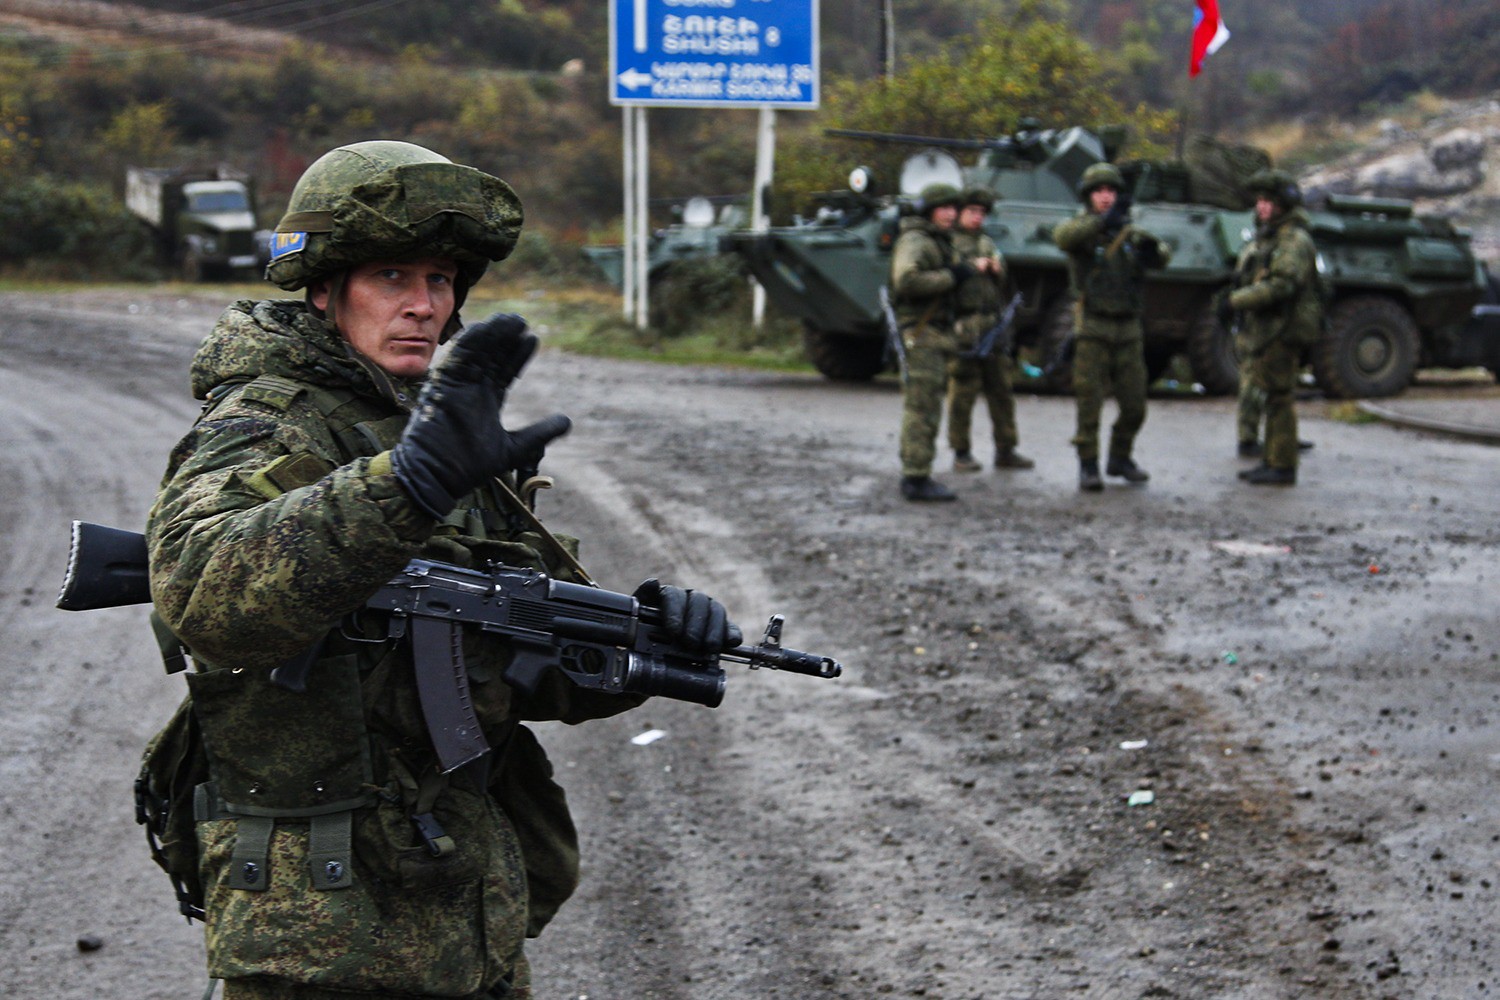 Một quân nhân gìn giữ hòa bình Nga ở trạm kiểm soát tại vùng Nagorno-Karabakh năm 2020. Ảnh: FP